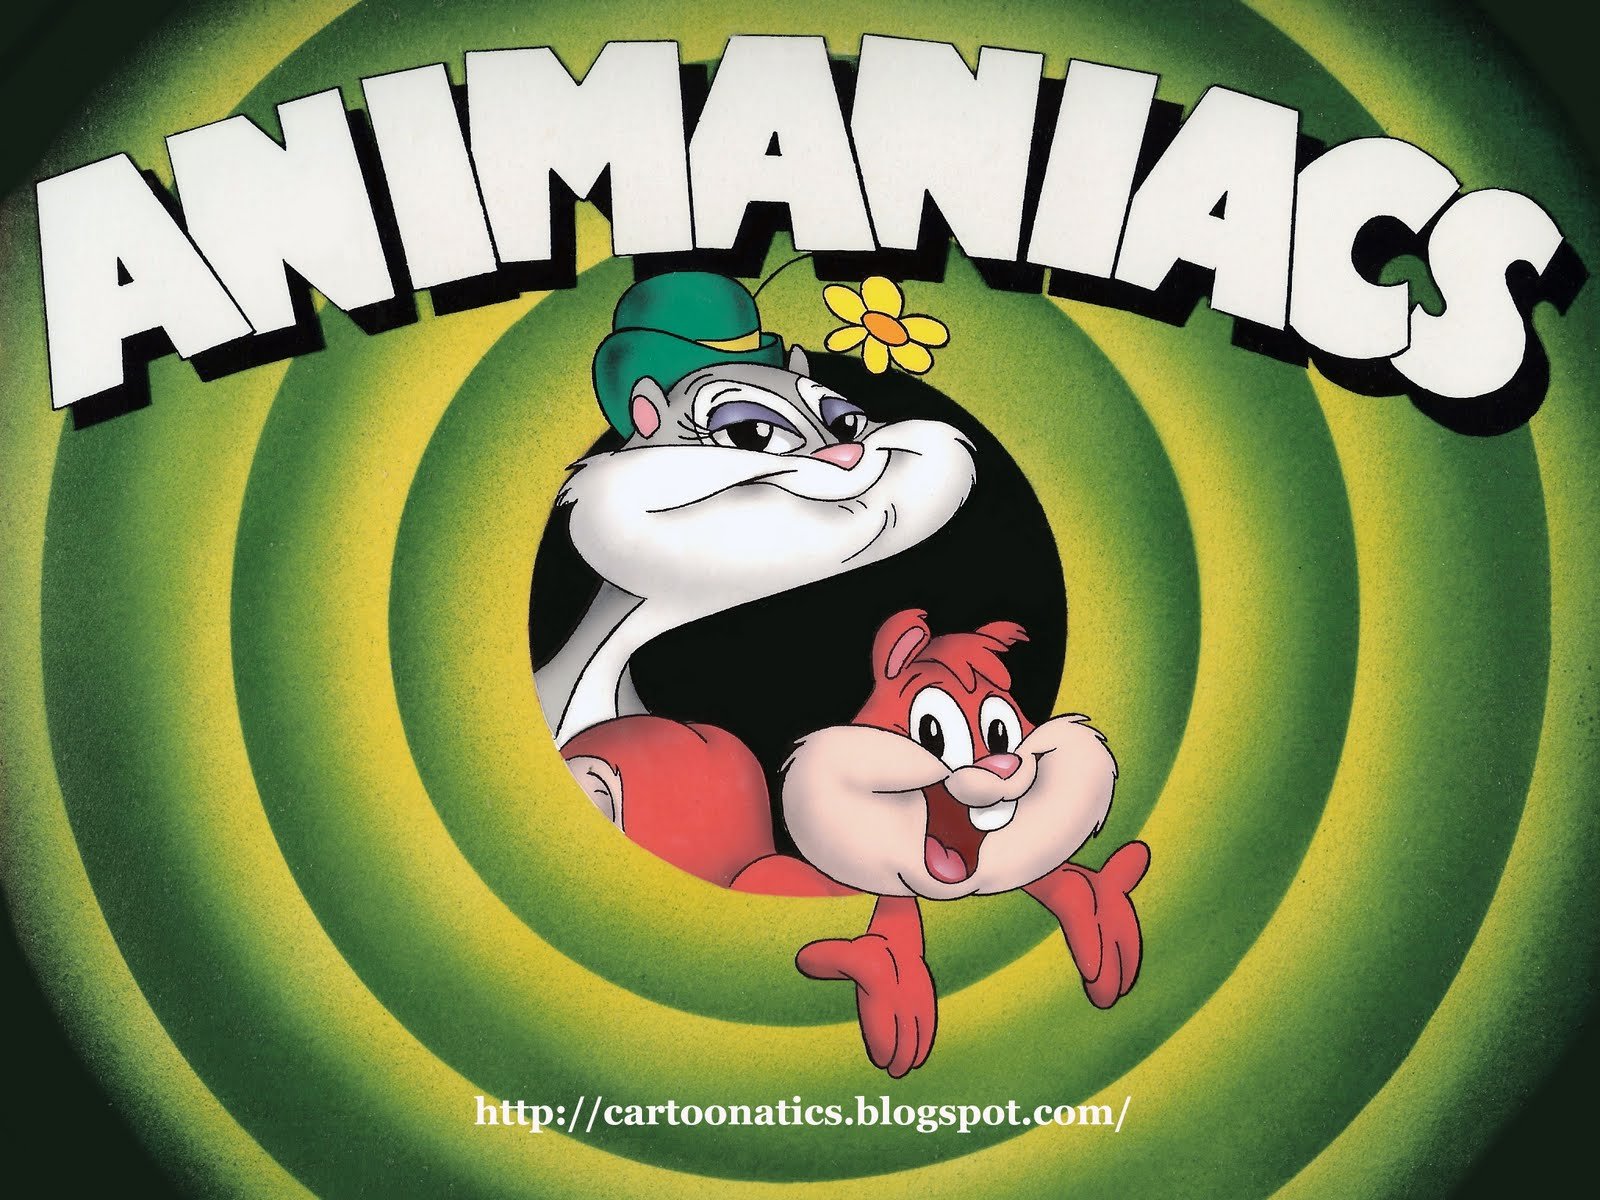 animaniacs, Family, Animation, Comedy, Cartoon Wallpaper